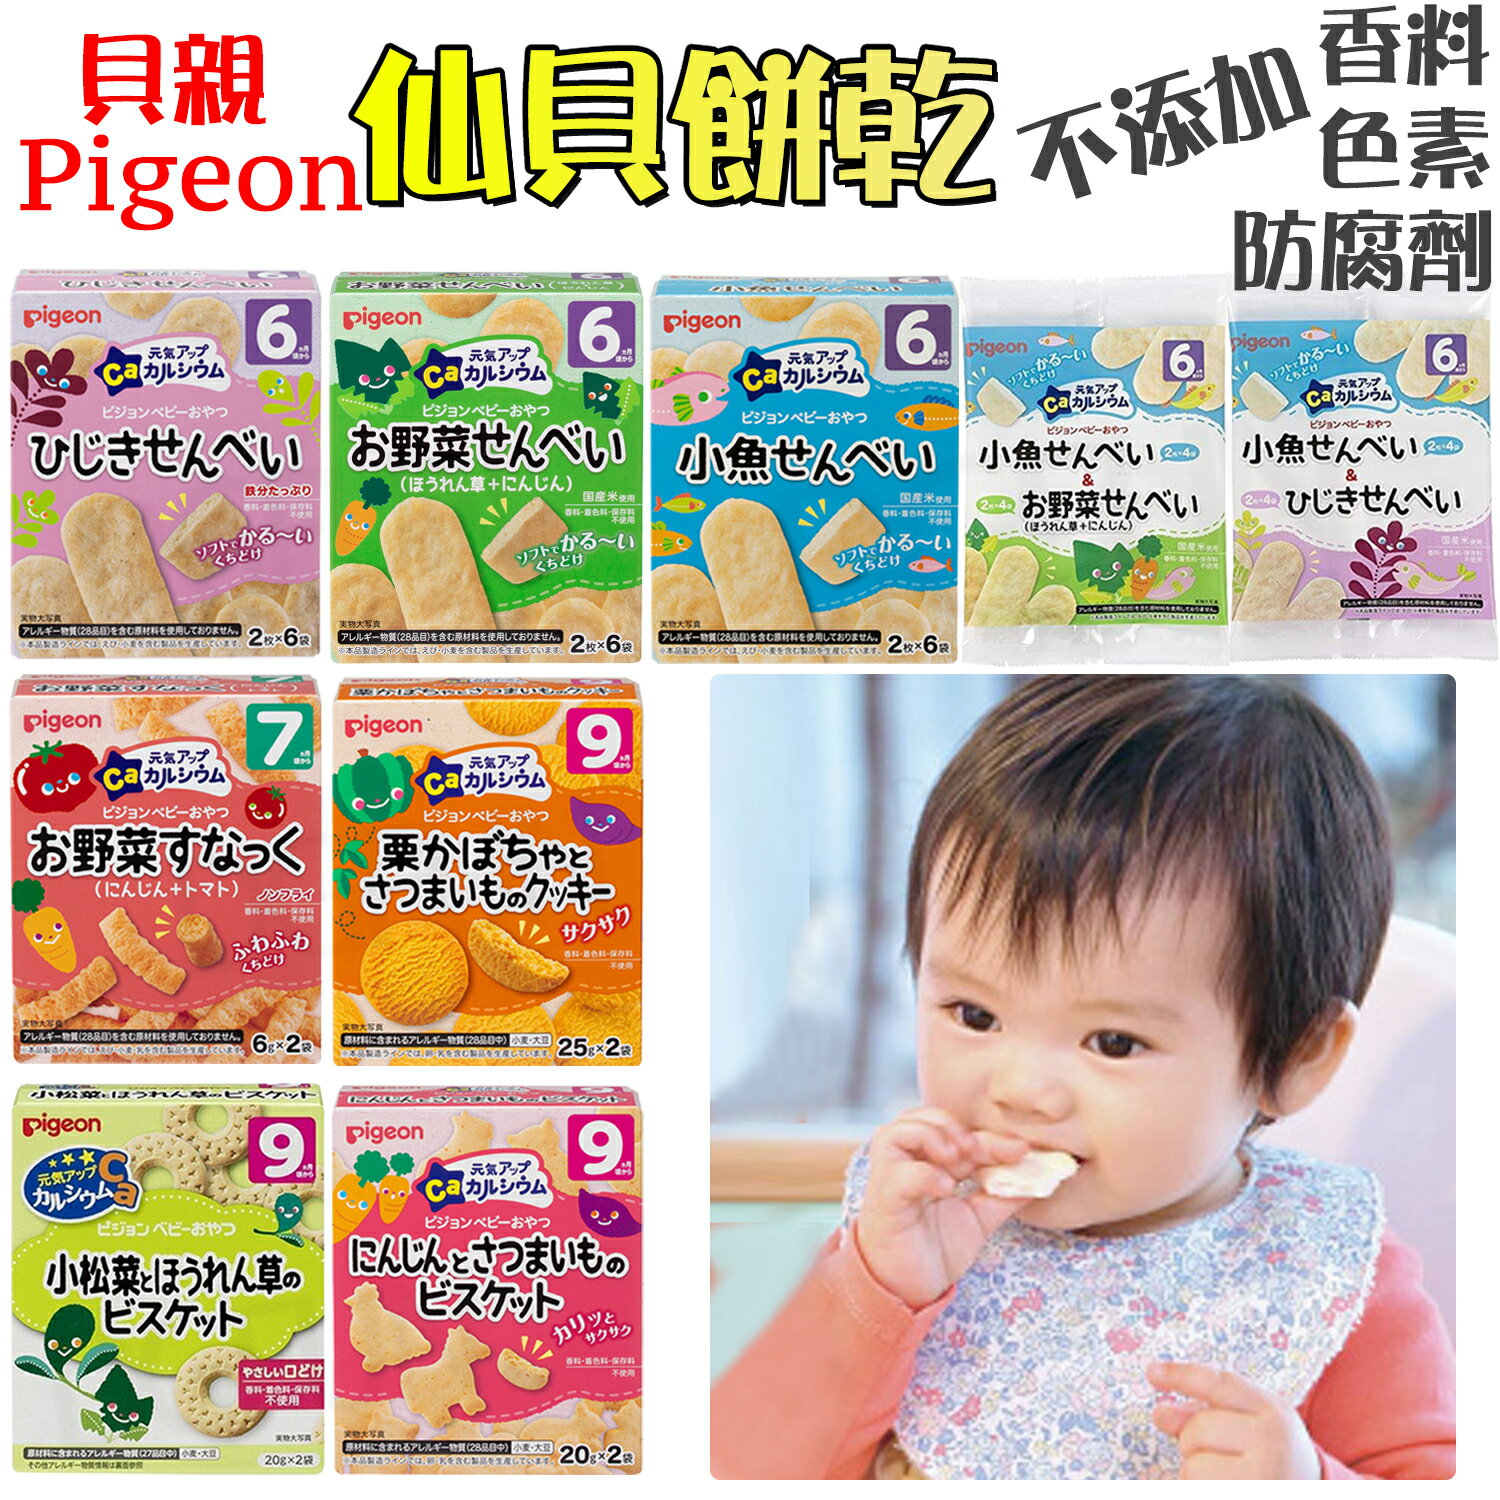 大賀屋 日本製 貝親 嬰兒米餅 寶寶副食品 6M+寶寶 燒菓子 嬰兒餅乾 寶寶米菓 野菜米餅 副食品 米餅 J00052151